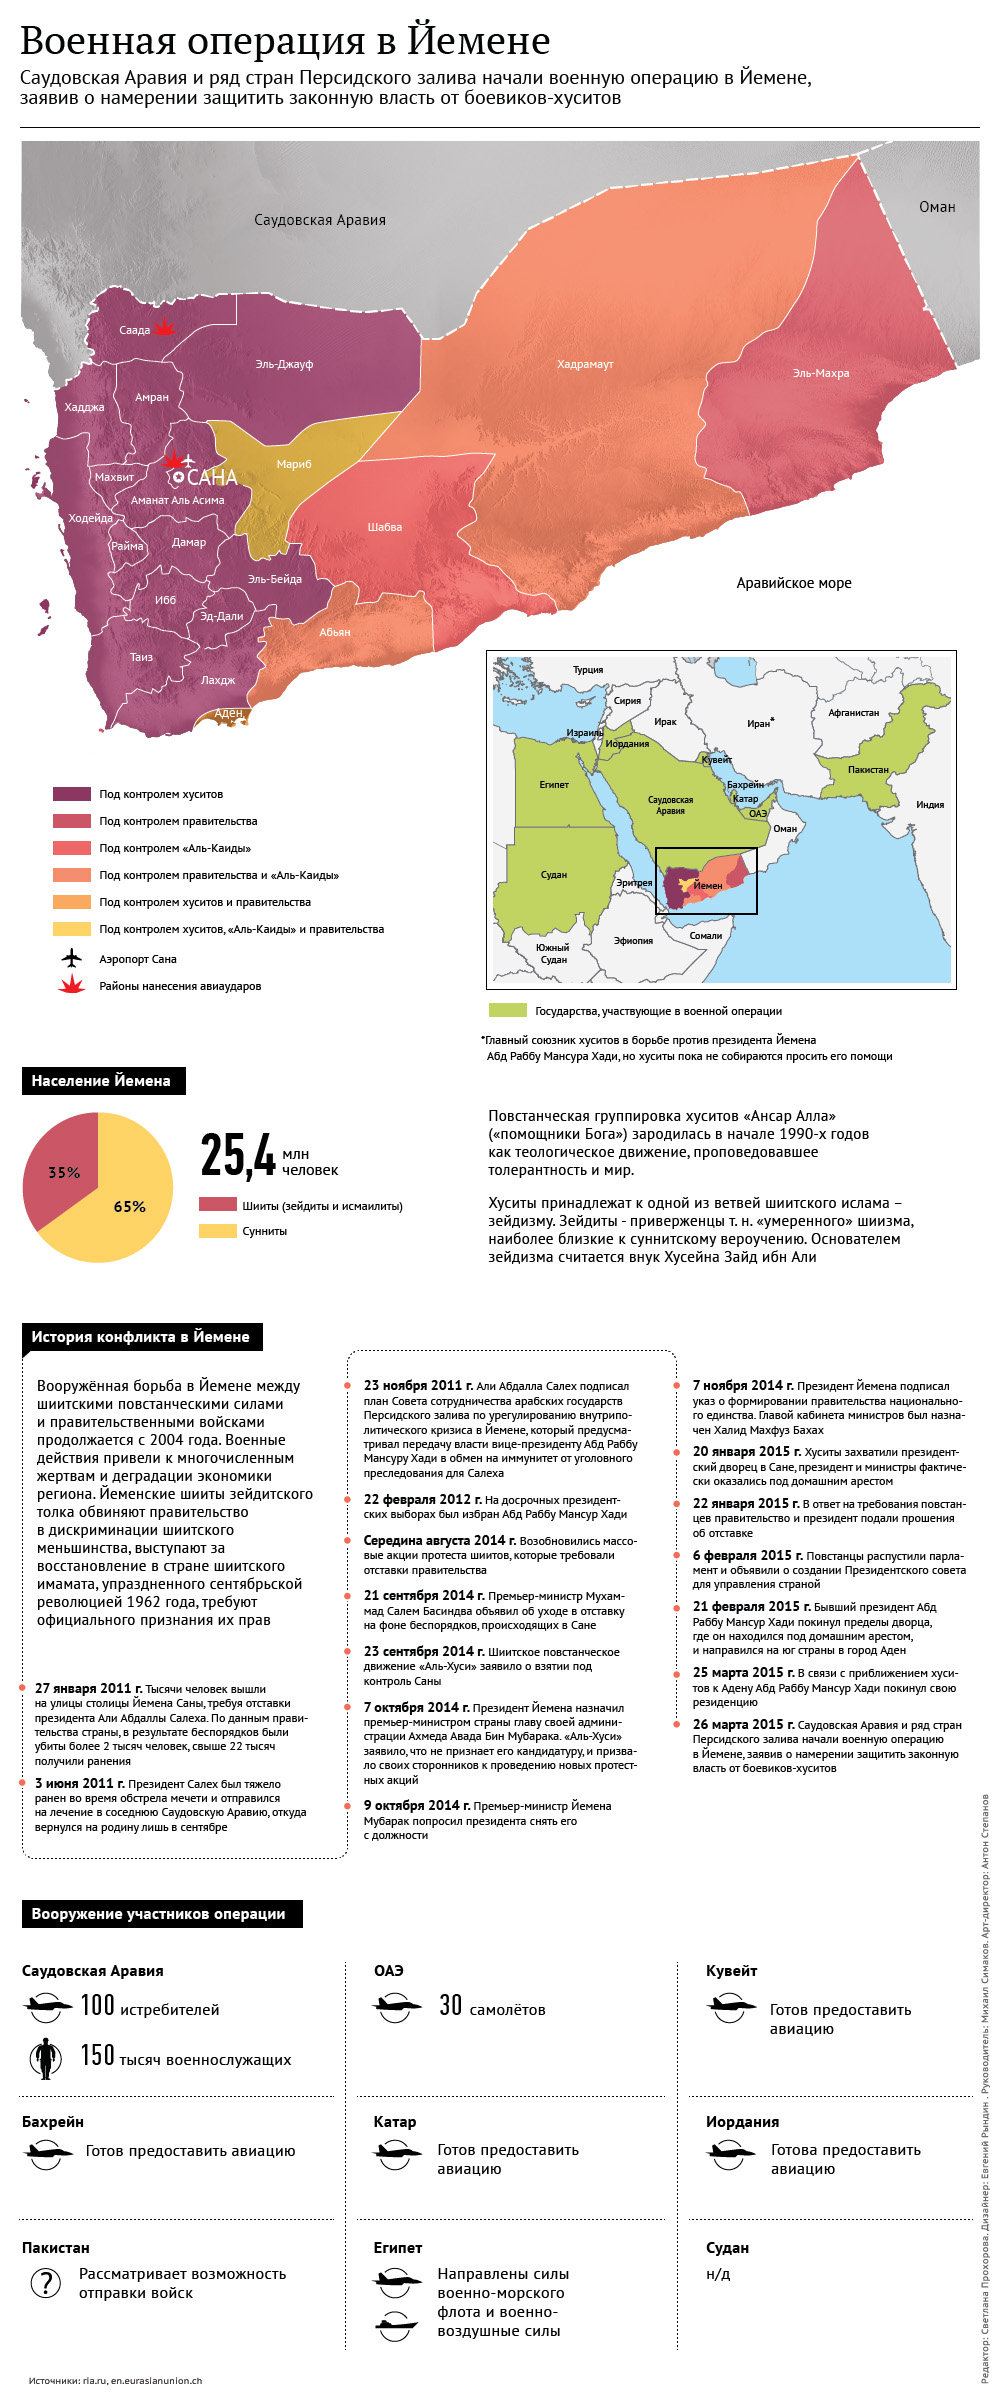 Военная операция в Йемене. Инфографика - Sputnik Таджикистан